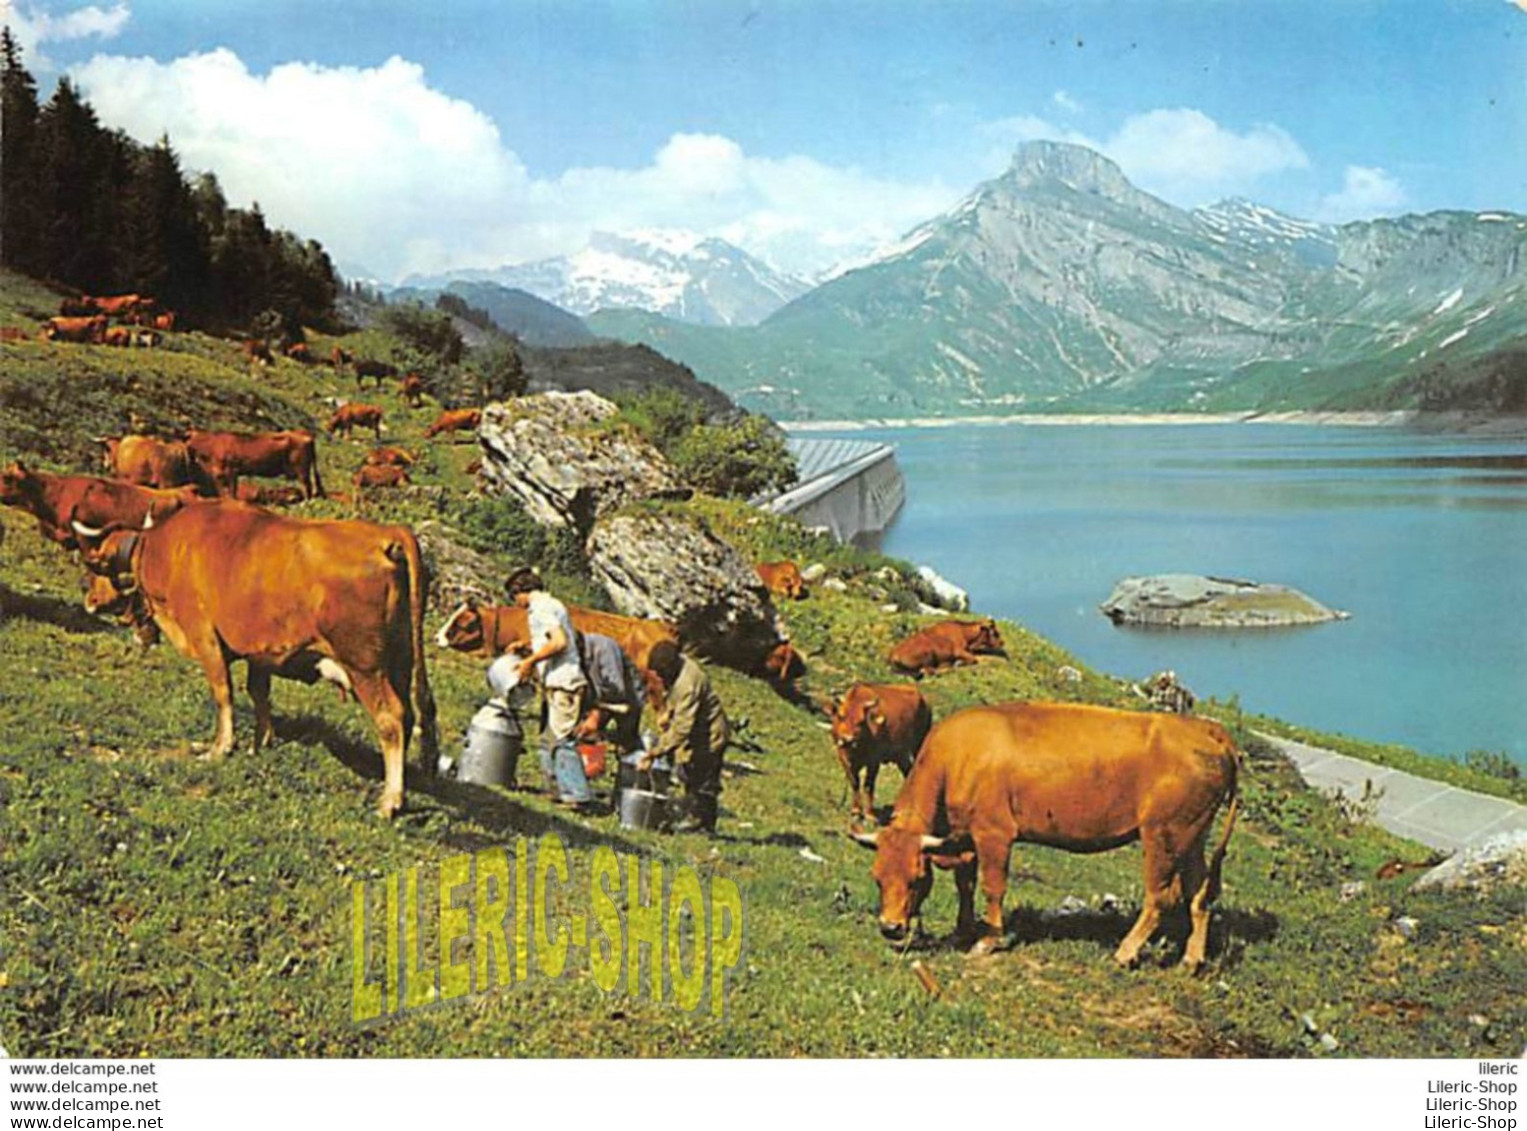 BEAUFORTIN (74) CPSM ±1970 Alpage Au Barrage De  Roselen - La Traite Des Vaches Cows # Agriculture - Kühe